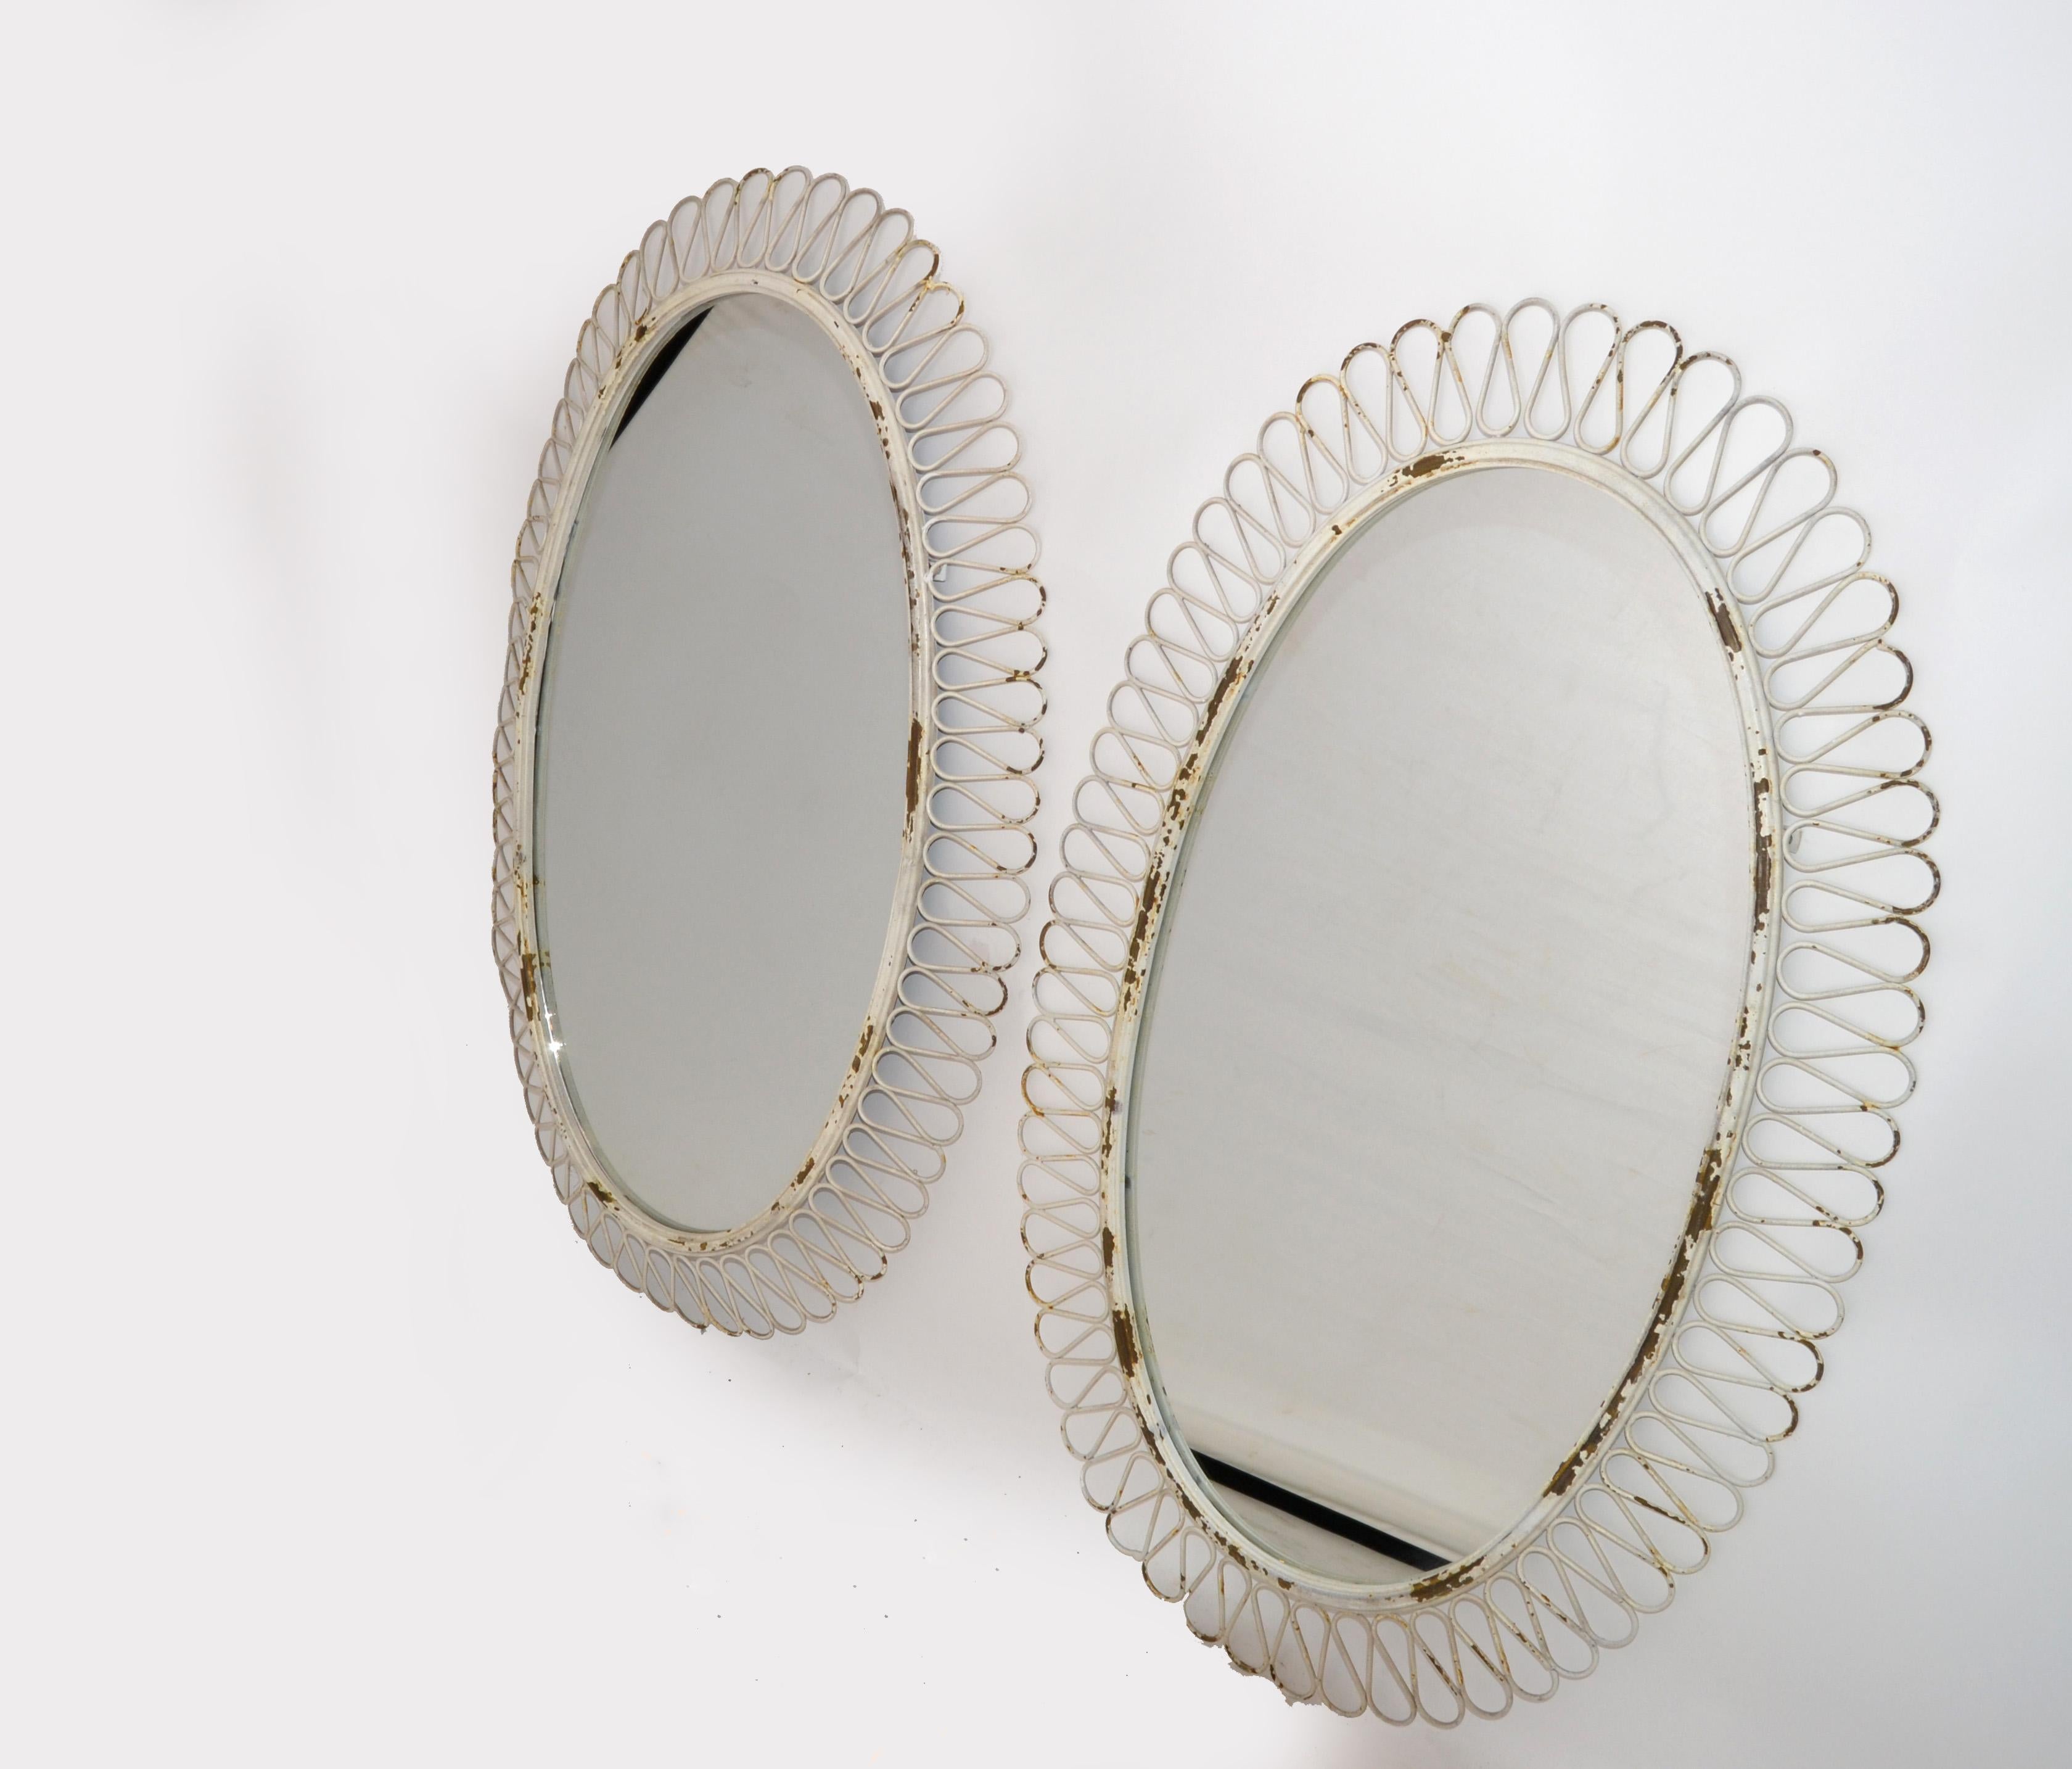 1950er Jahre Französisch notleidenden antiken weißen Schmiedeeisen Wandspiegel oder Konsole Spiegel Art Deco-Stil.
Handgefertigte schmiedeeiserne Umrandung des ovalen Spiegels.
Sichere Aufhängekonstruktion auf der Rückseite.
Atemberaubende